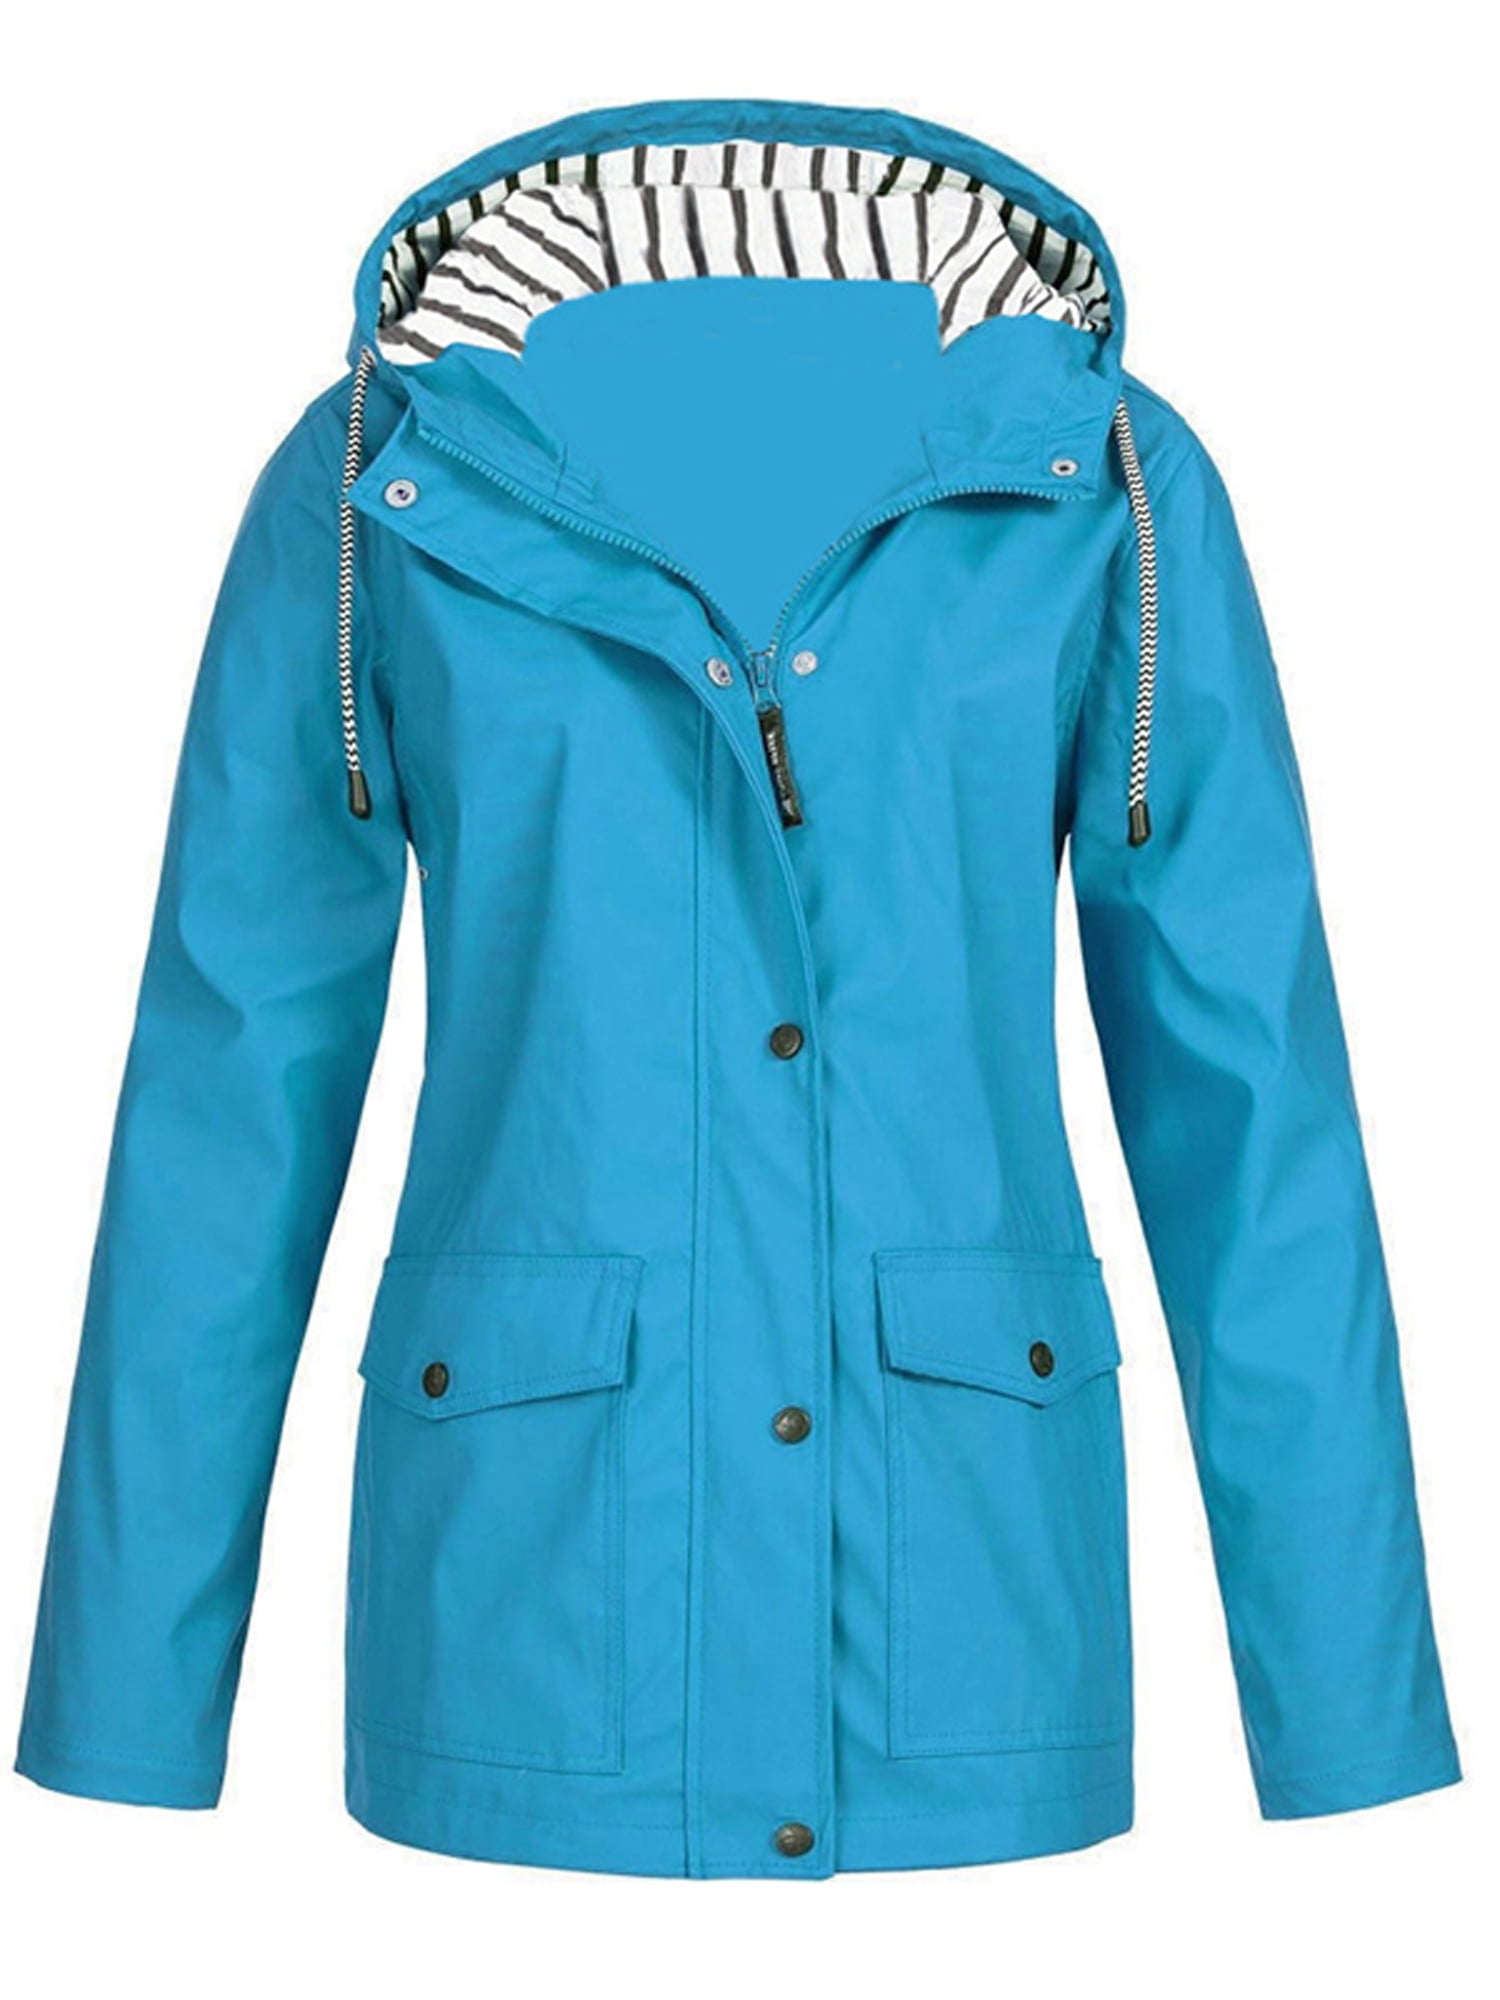 Plus Size Women's Hooded Wind Jacket Climbing Coat Waterproof Rain Coat ...